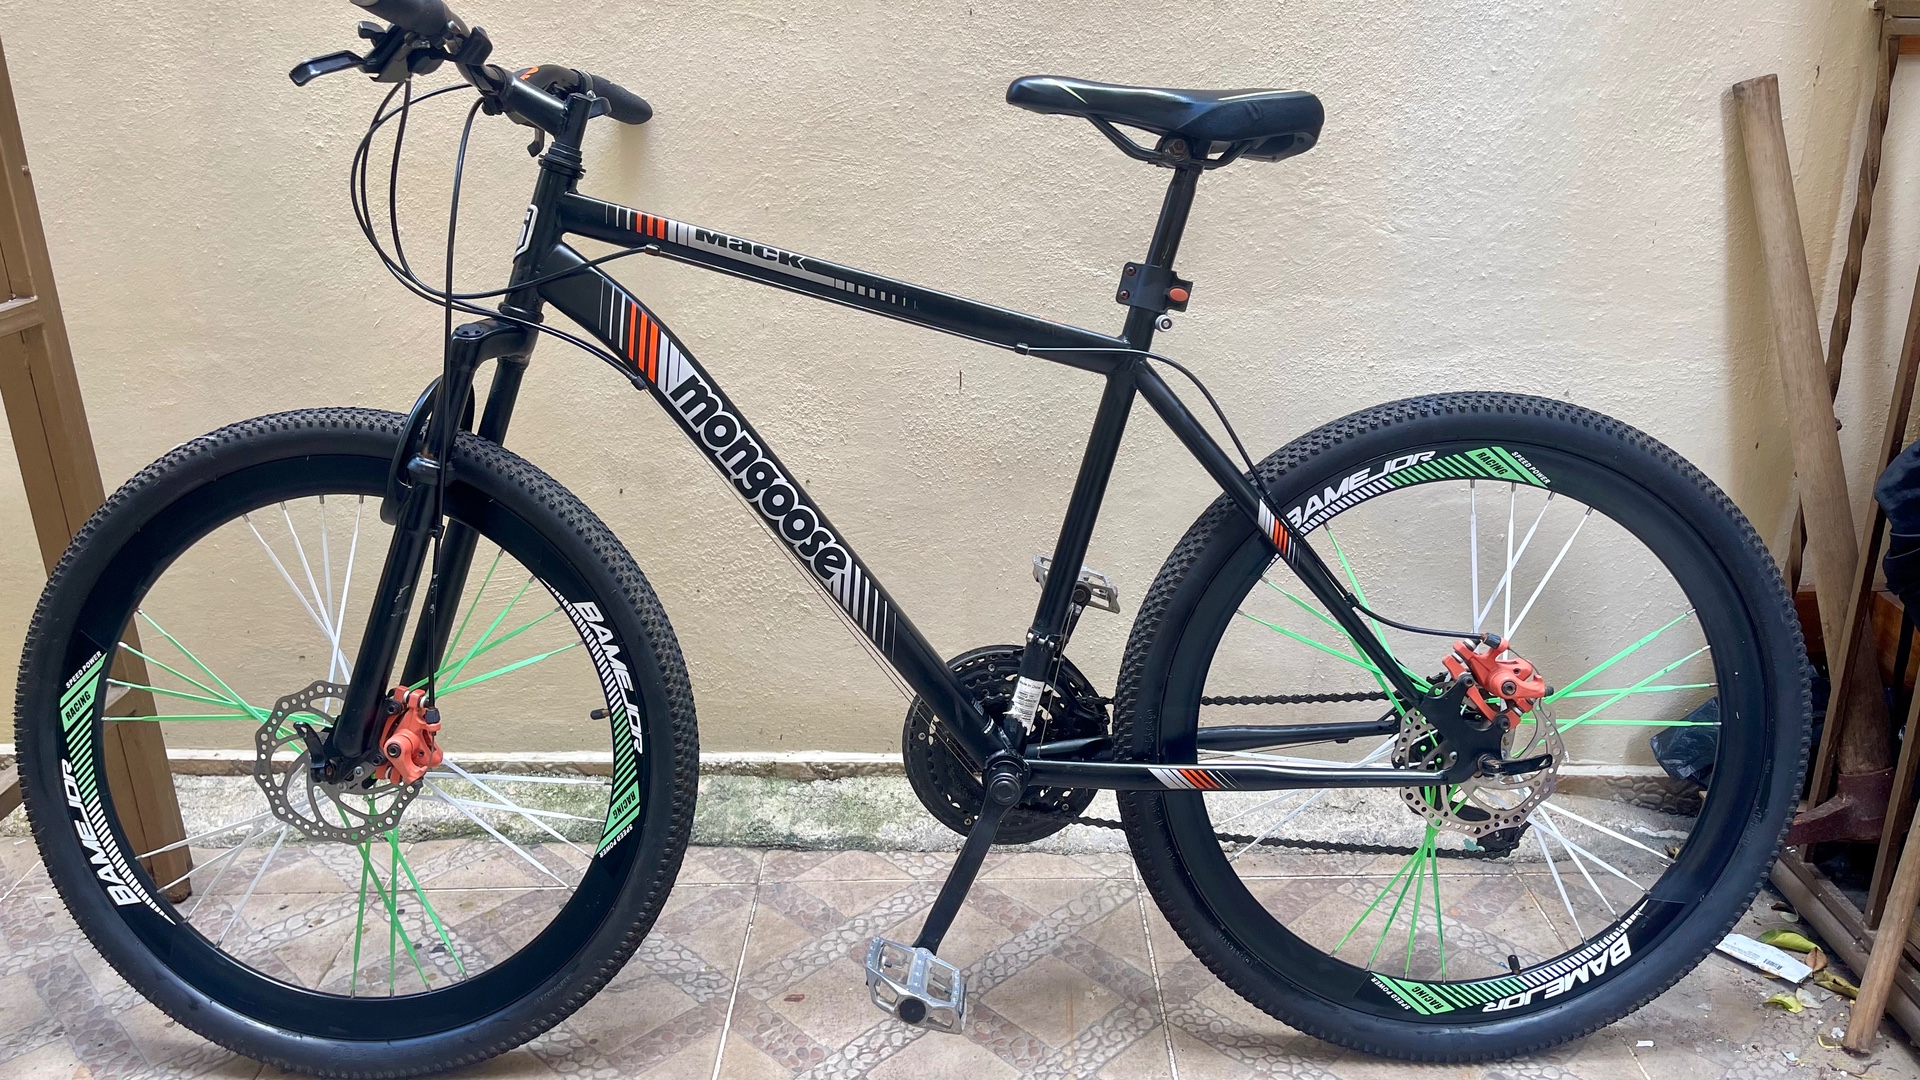 bicicletas y accesorios - Bicicleta Haro 28 0